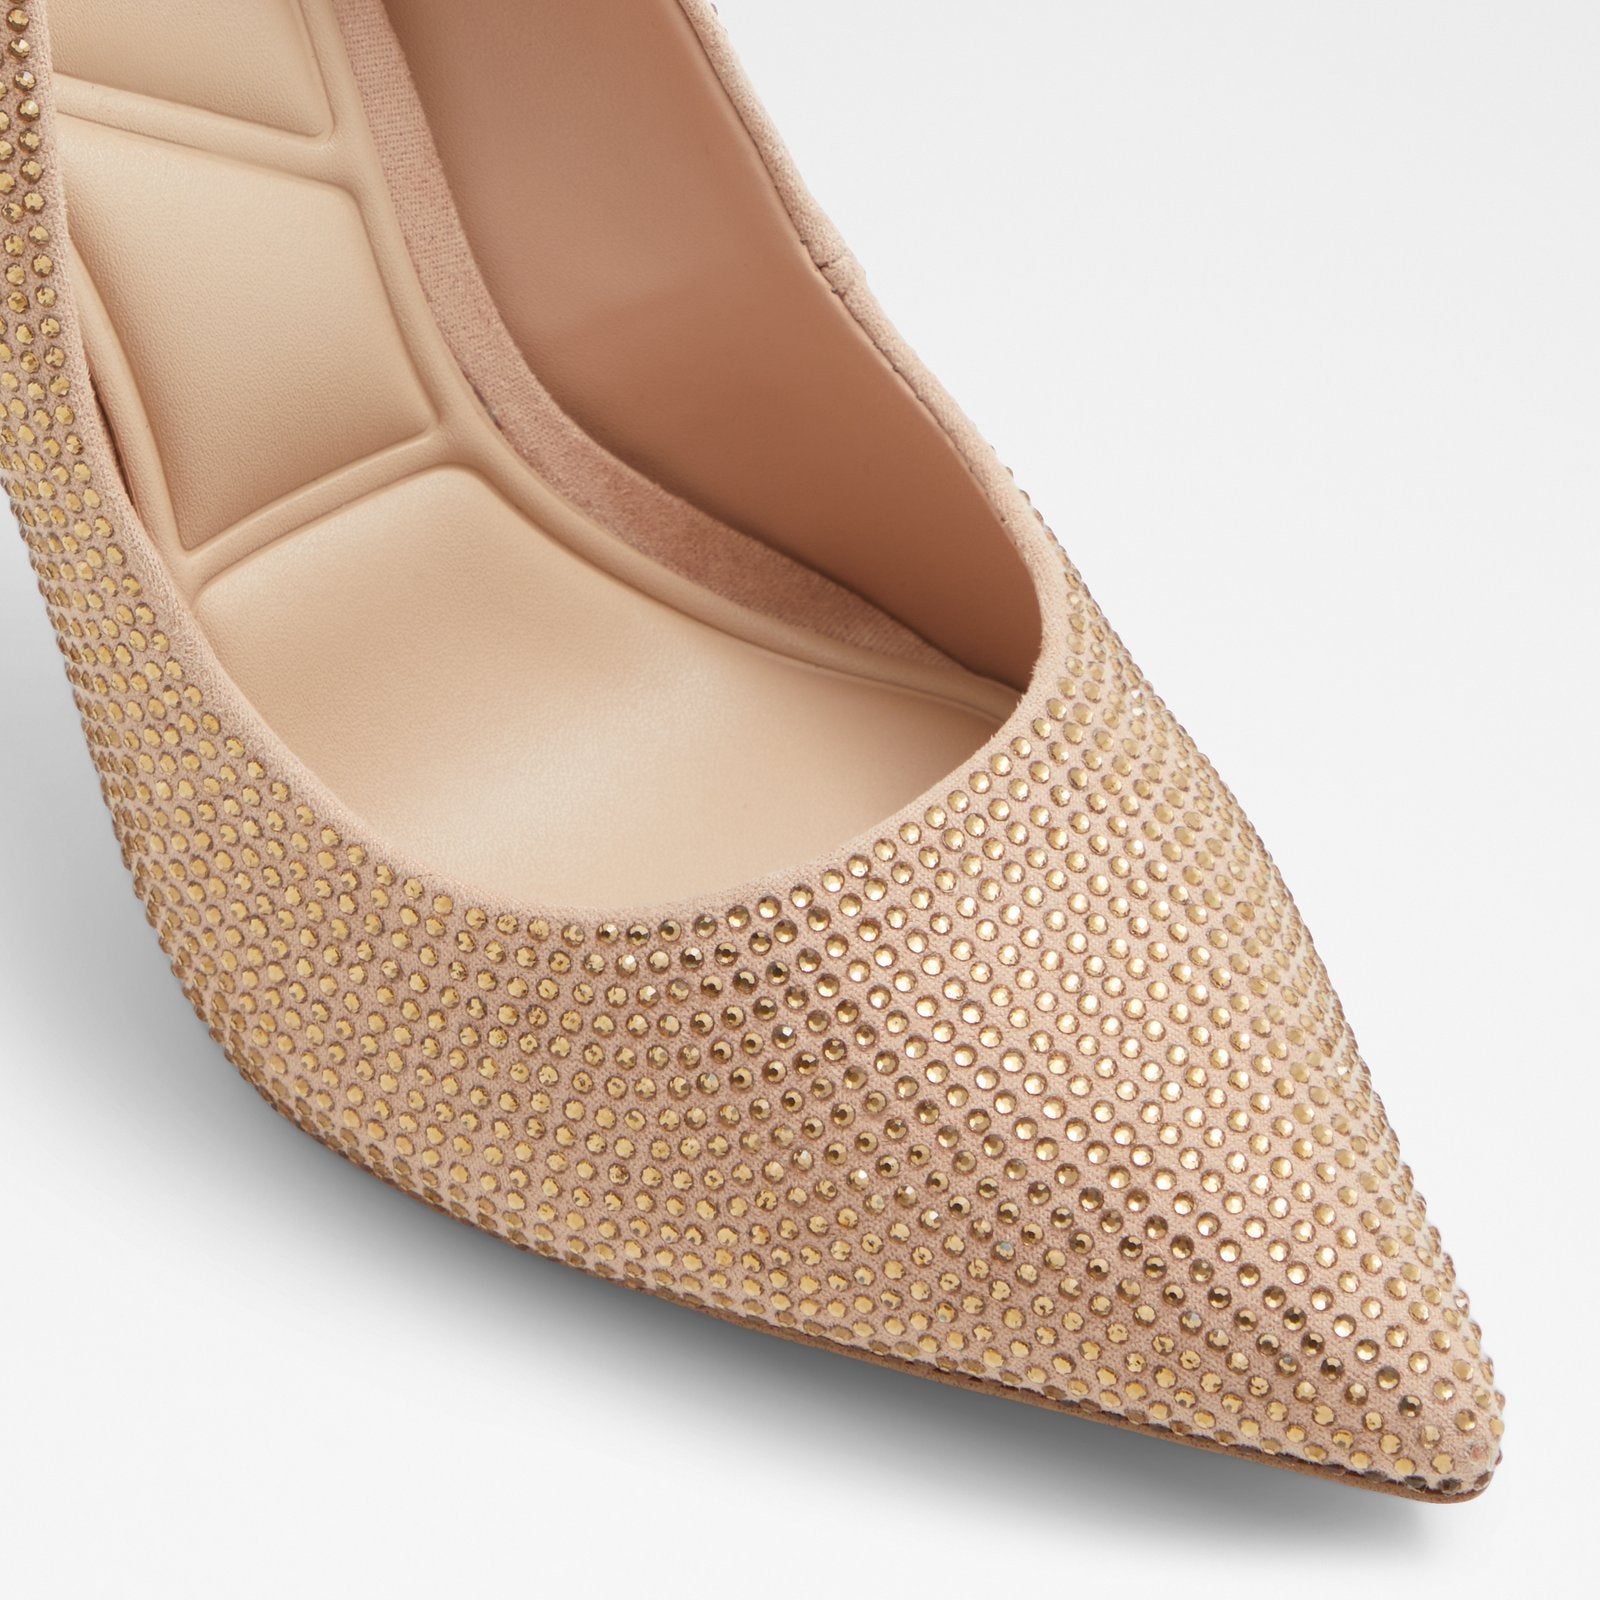 Stessy2.0 / Heeled Women Shoes - Light Beige - ALDO KSA